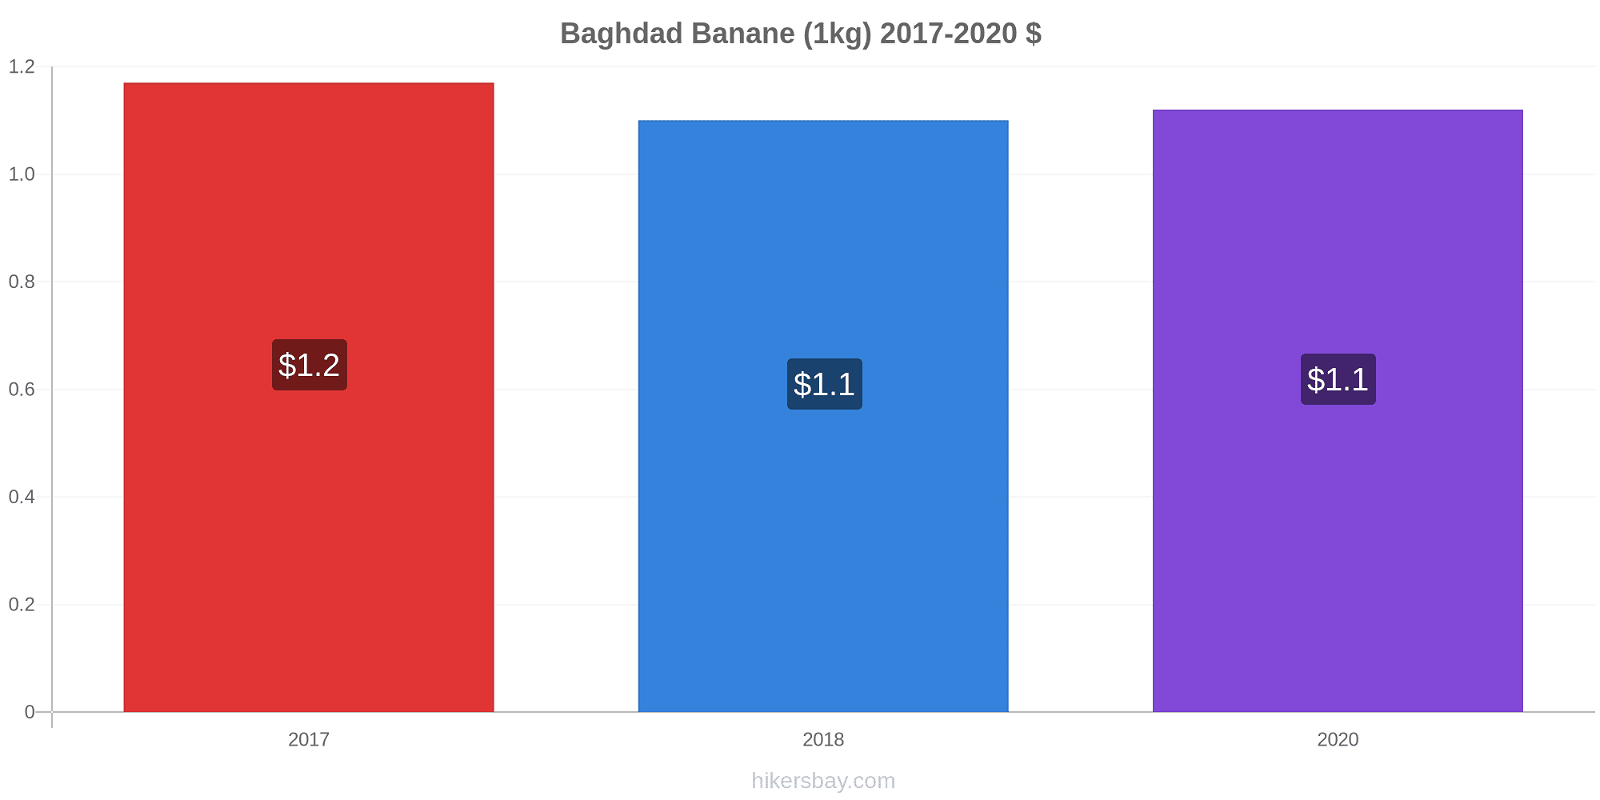 Baghdad variazioni di prezzo Banana (1kg) hikersbay.com